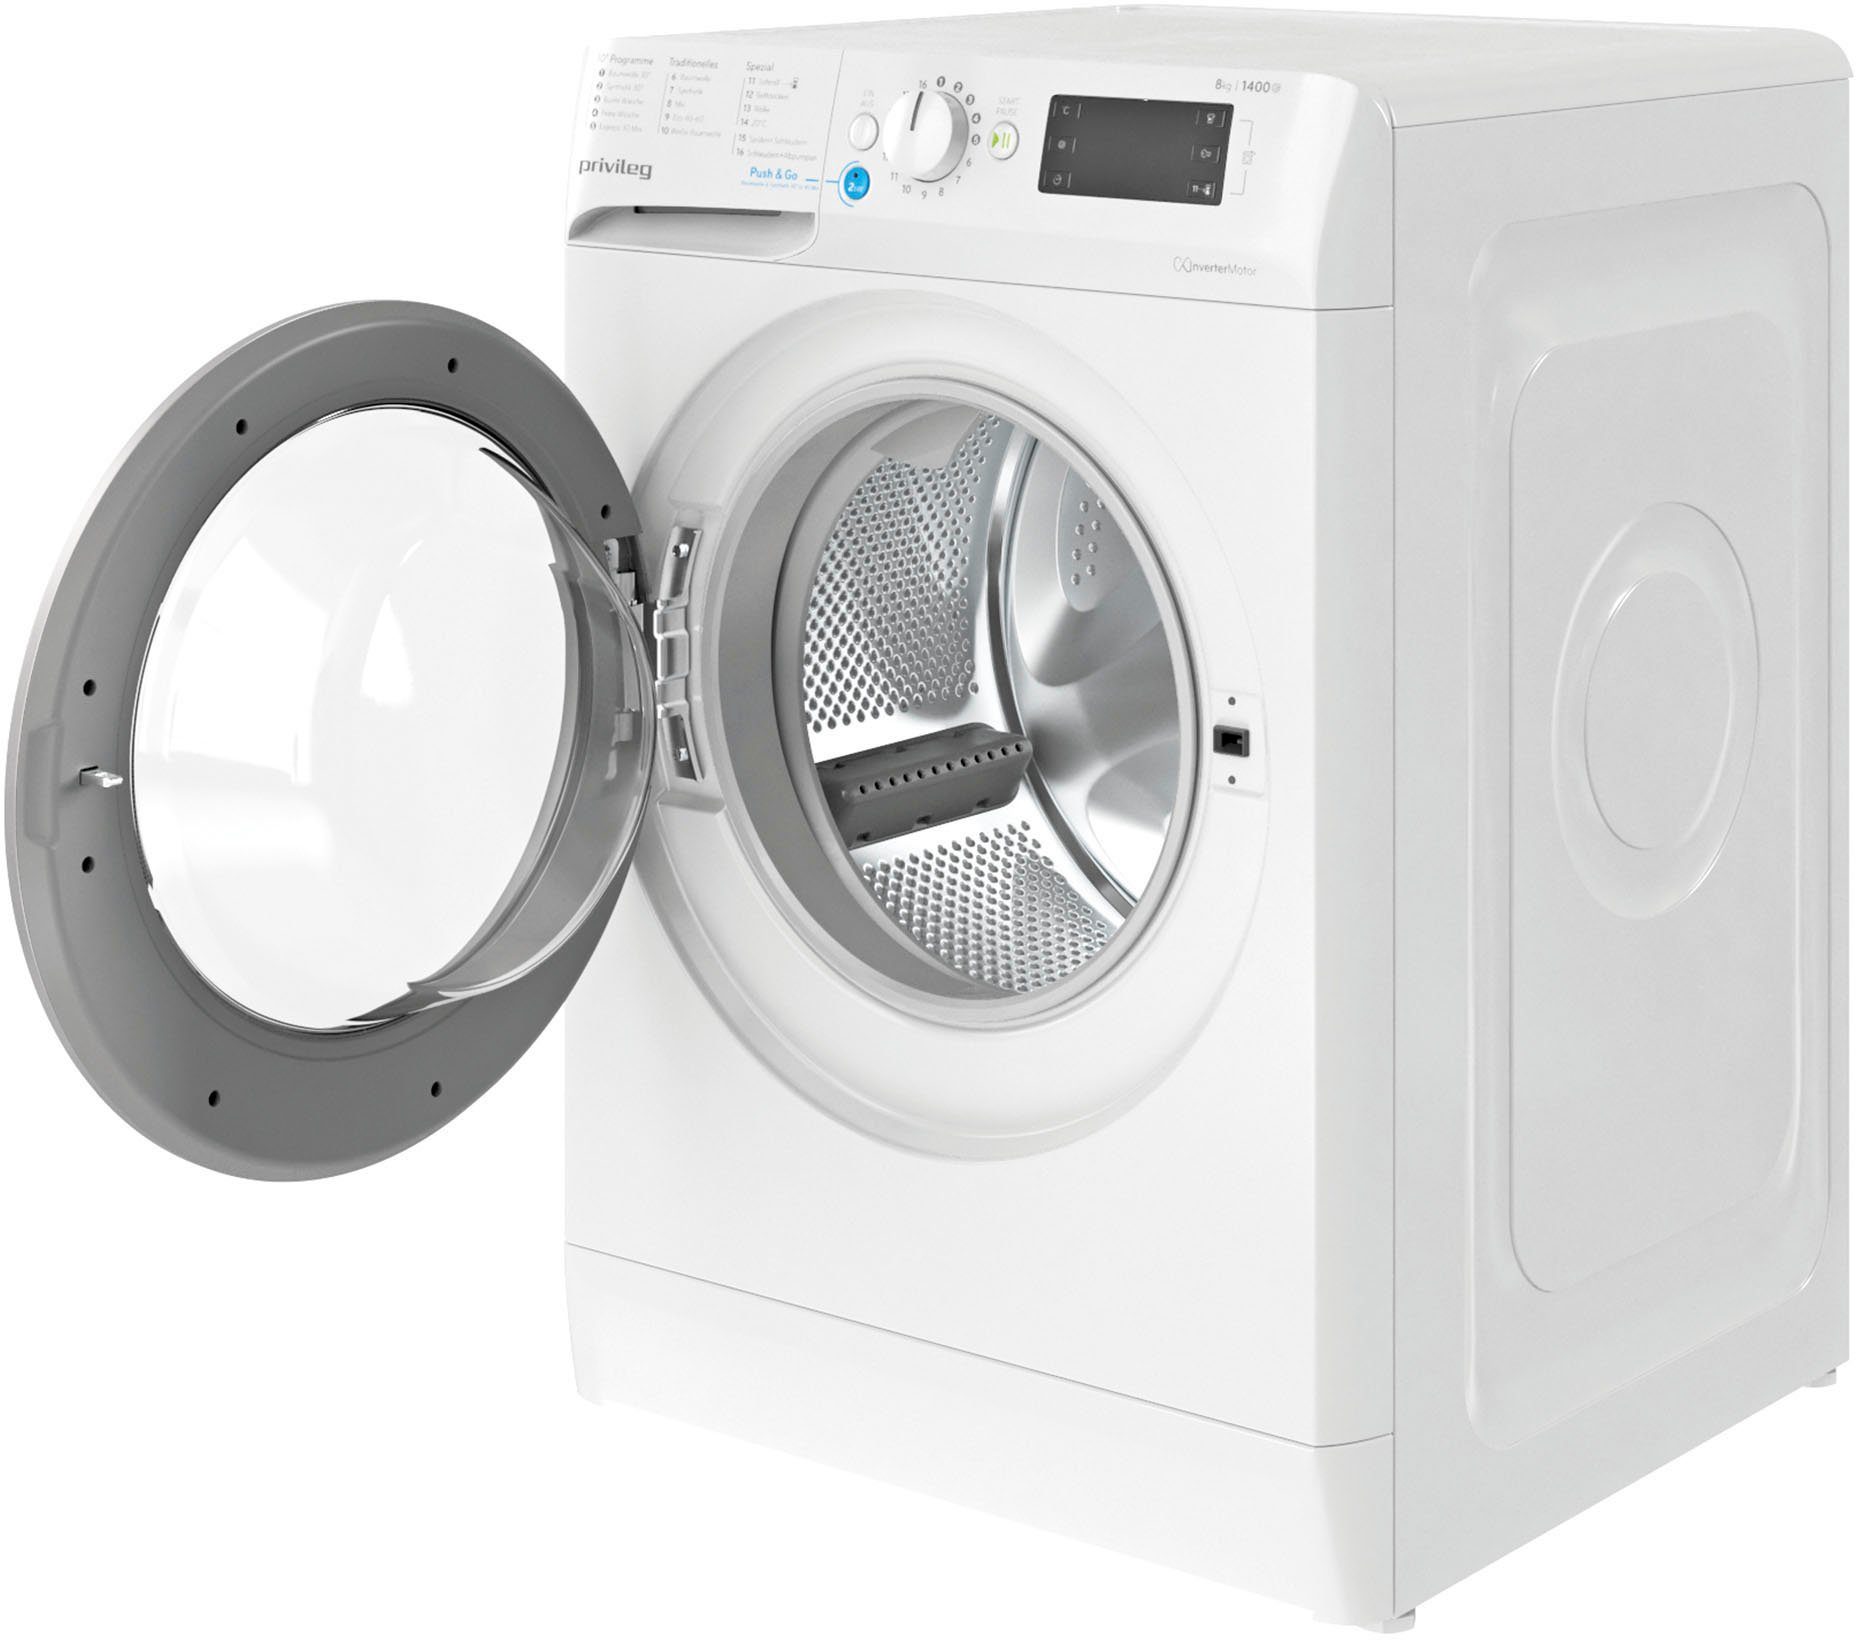 Privileg Waschmaschine PWF X kg, A, 8 U/min 853 1400